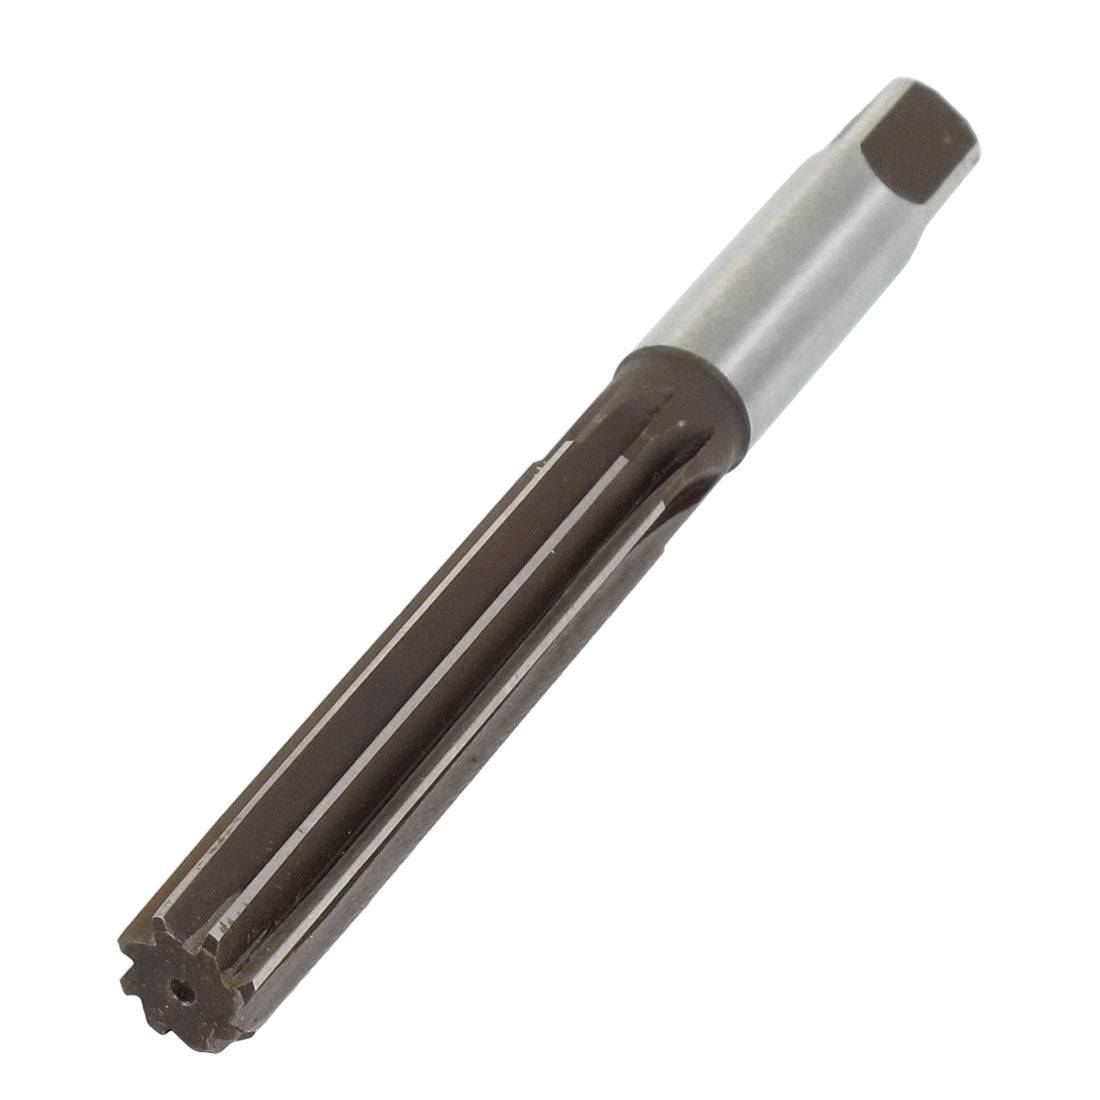 uxcell Uxcell 18mm Diameter 8 Flutes HSS Machine Reamer Milling Cutter Tool